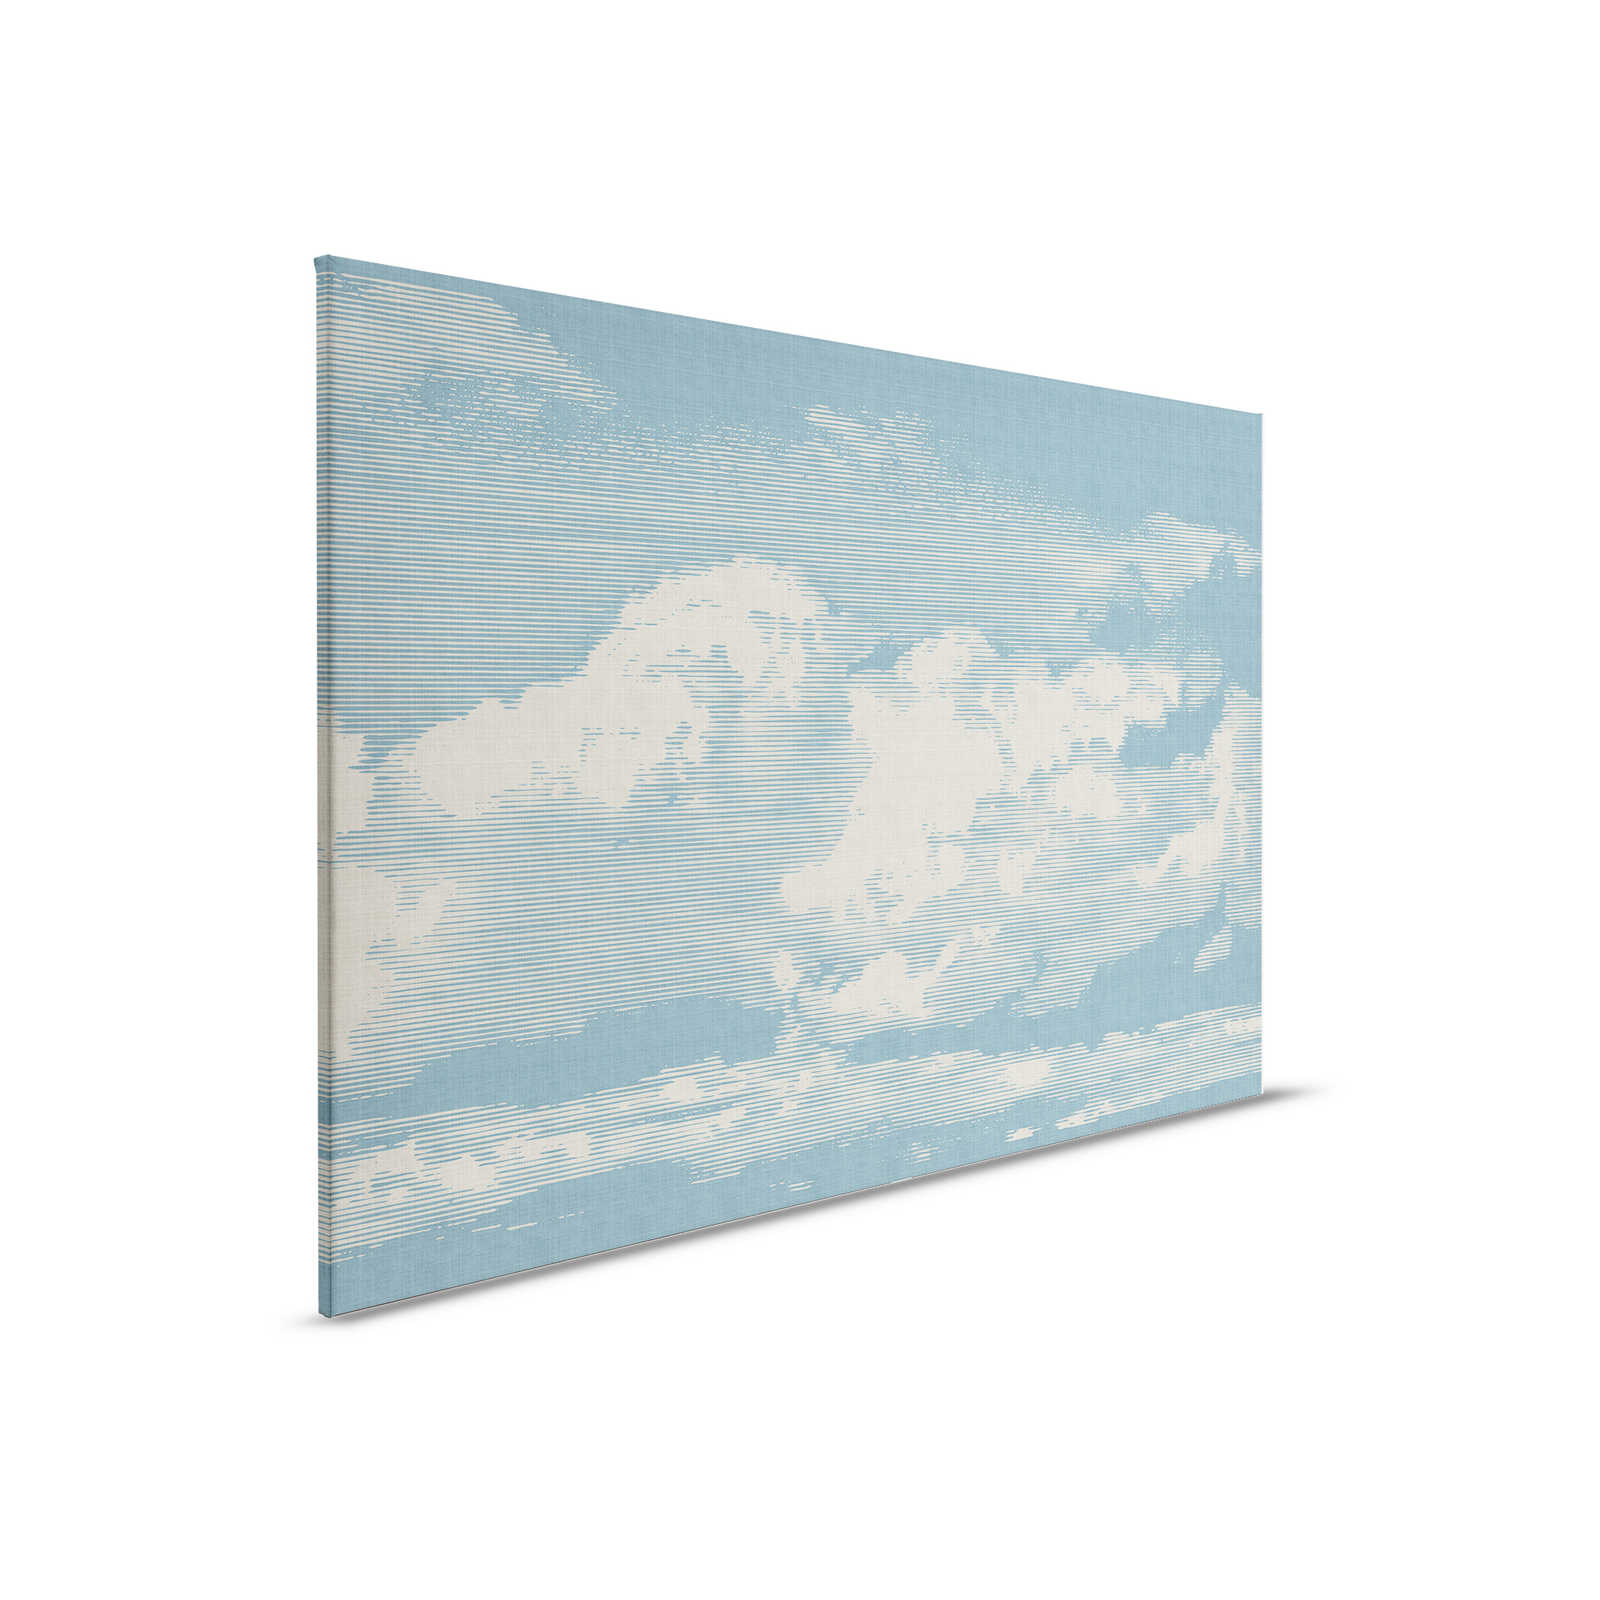 Clouds 1 - Hemelse canvasfoto met wolkenmotief in natuurlijke linnenlook - 0,90 m x 0,60 m
